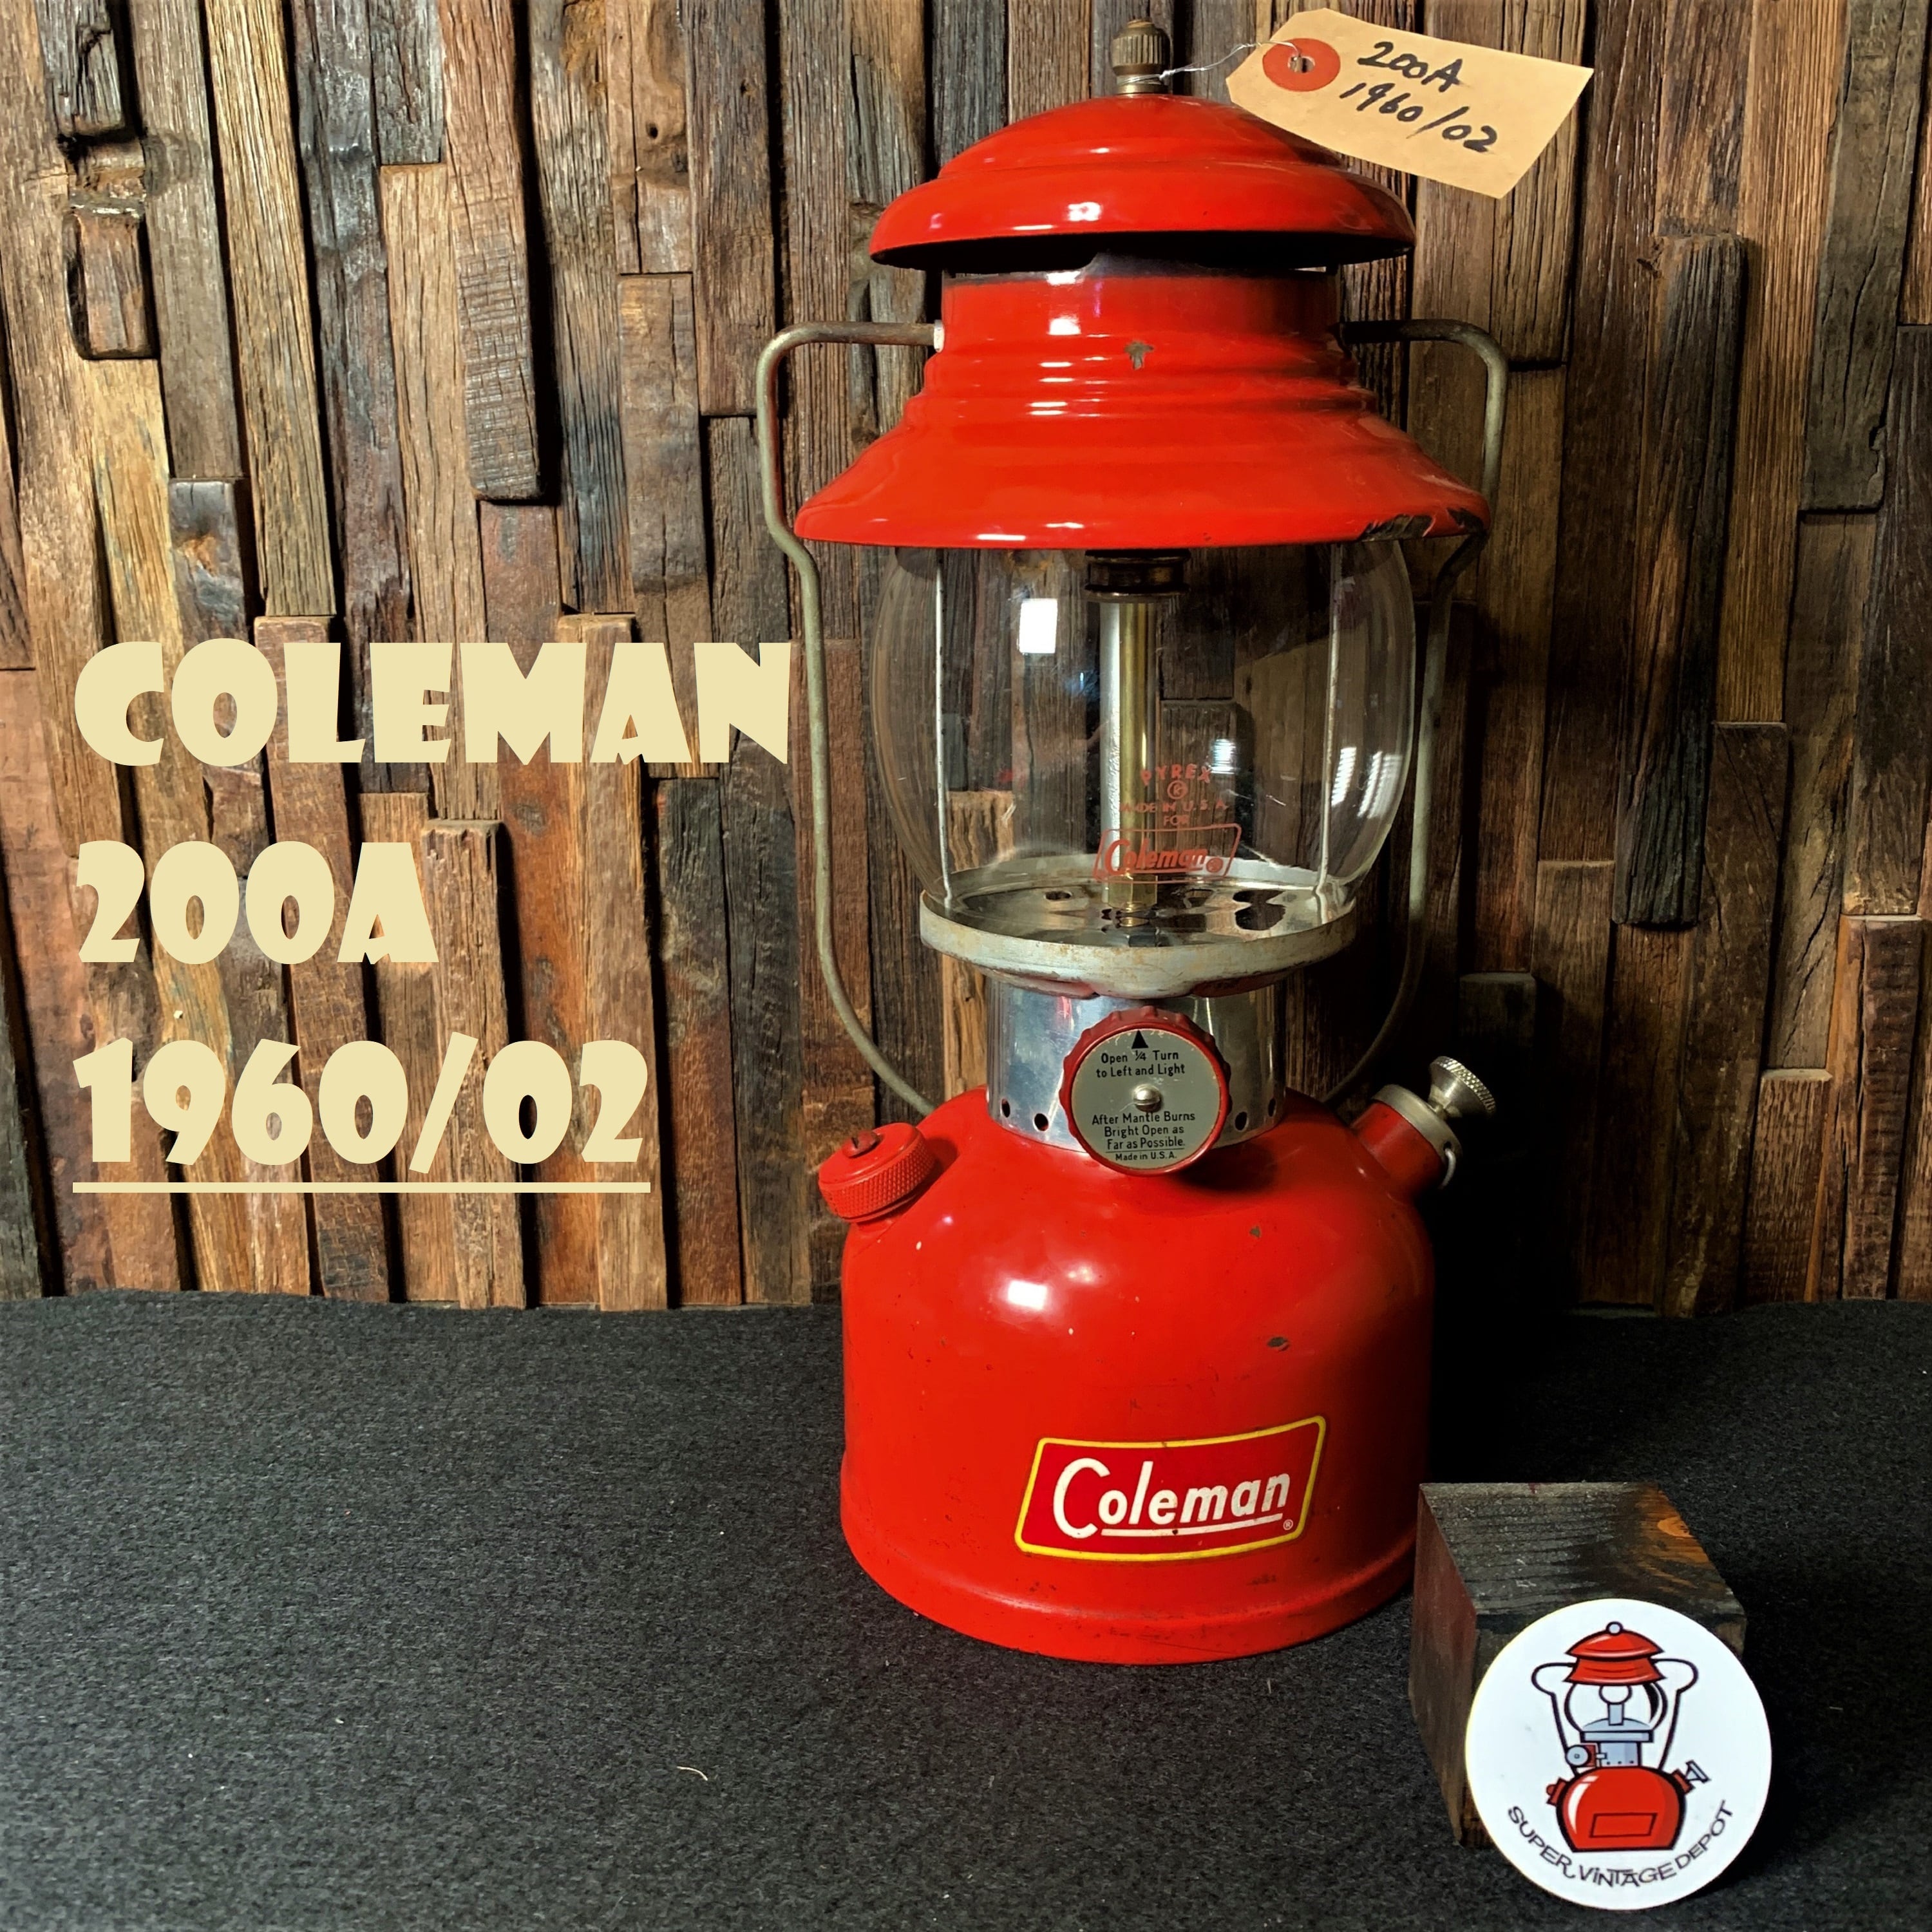 コールマン 200A 1960年2月製造 前期 イエローボーダー 黄枠 ランタン COLEMAN 完全分解製造済み パイレックスグローブ 美品  キャンプ バースデー | スーパービンテージデポ【Super Vintage Depot】